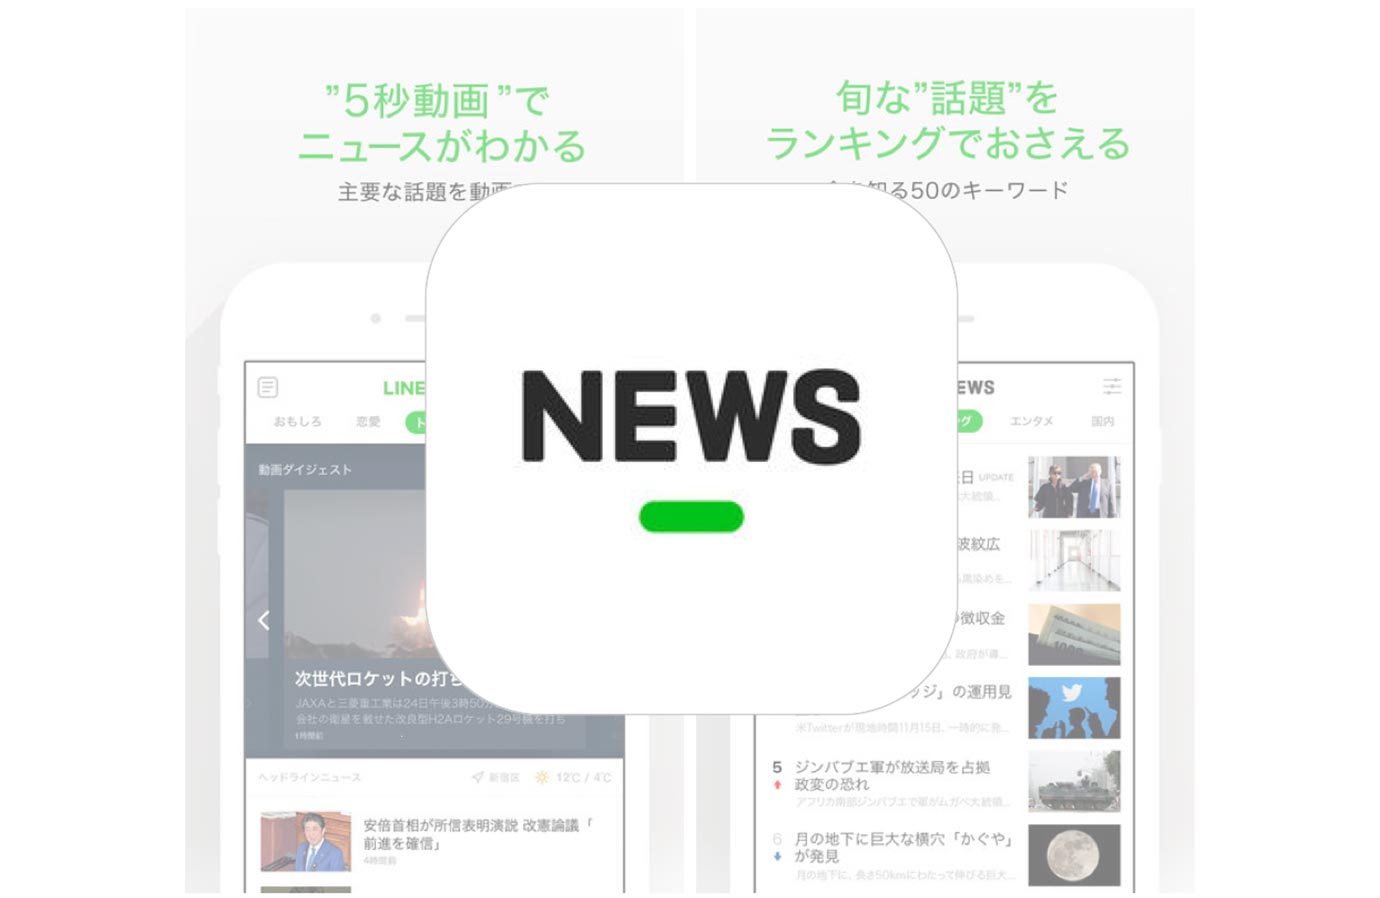 Linenews